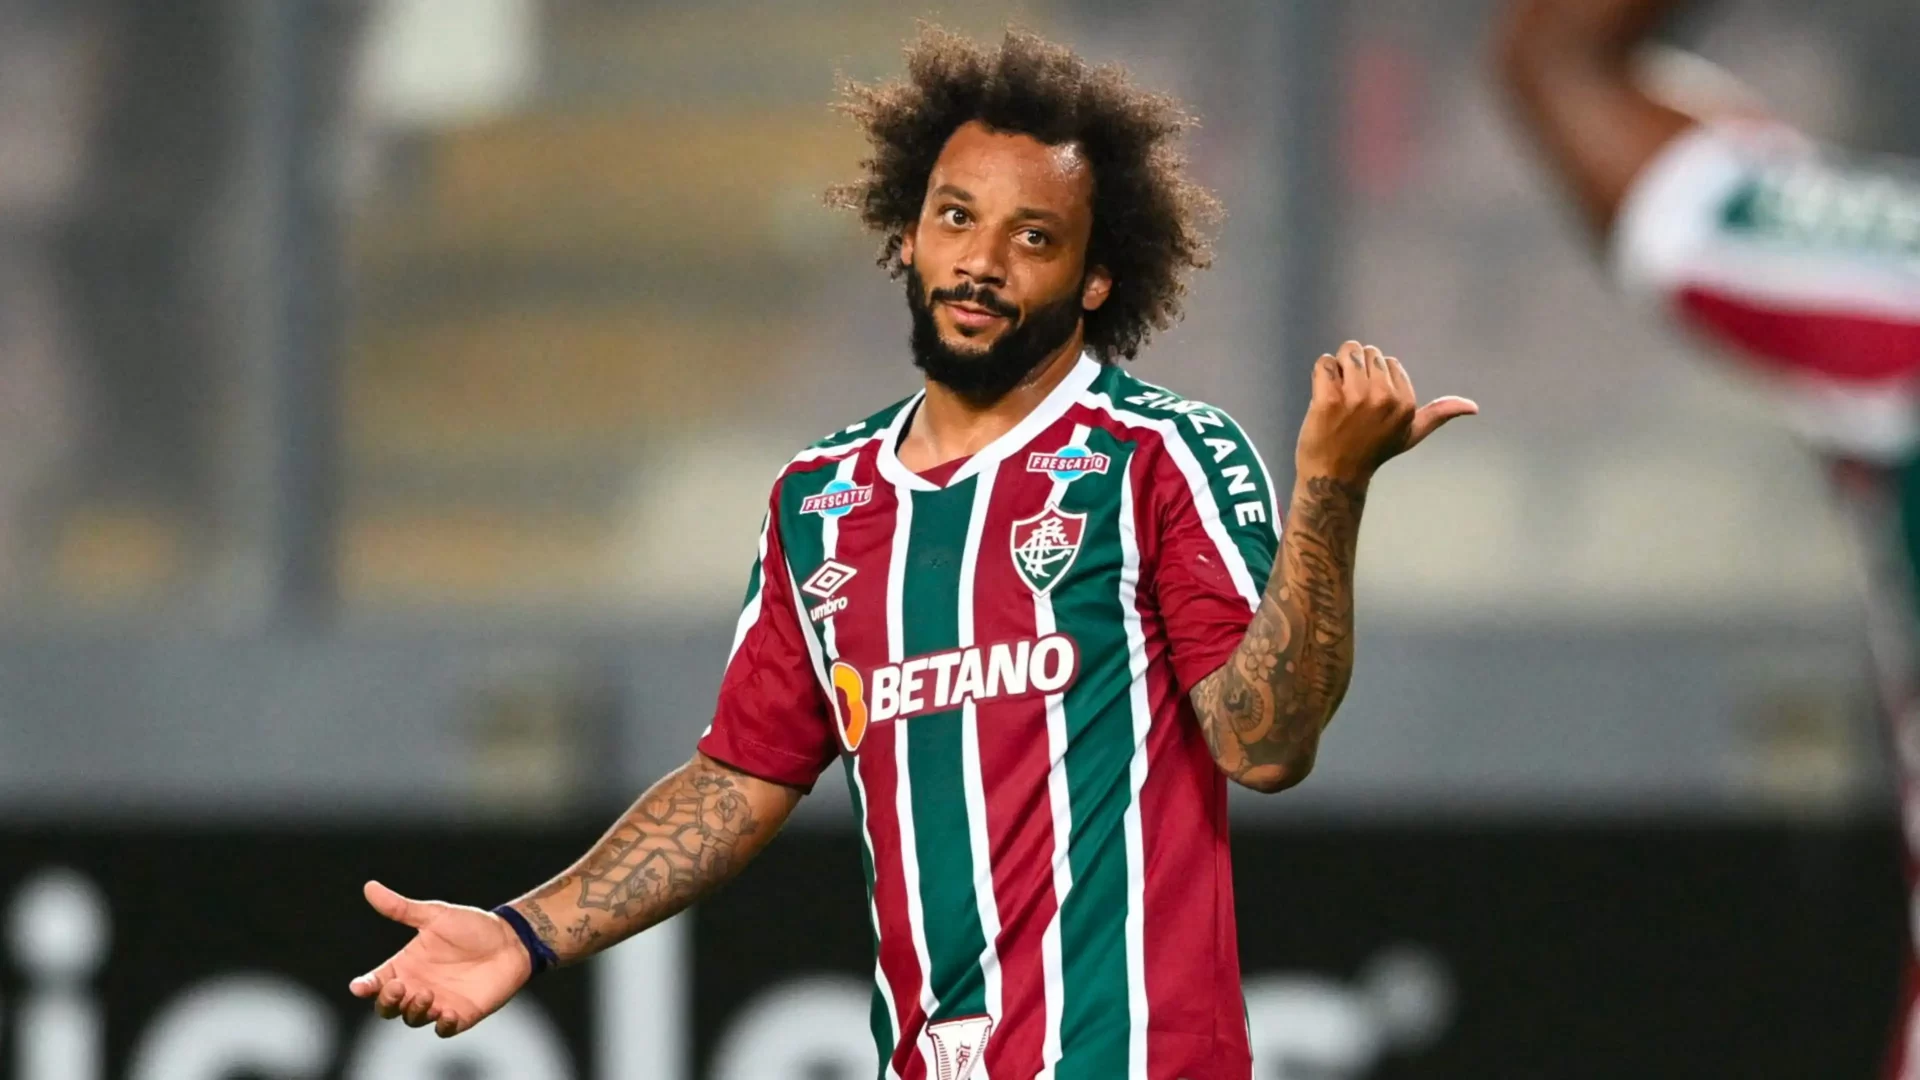 "Disputar com Marcelo" Fluminense anuncia outro lateralesquerdo do